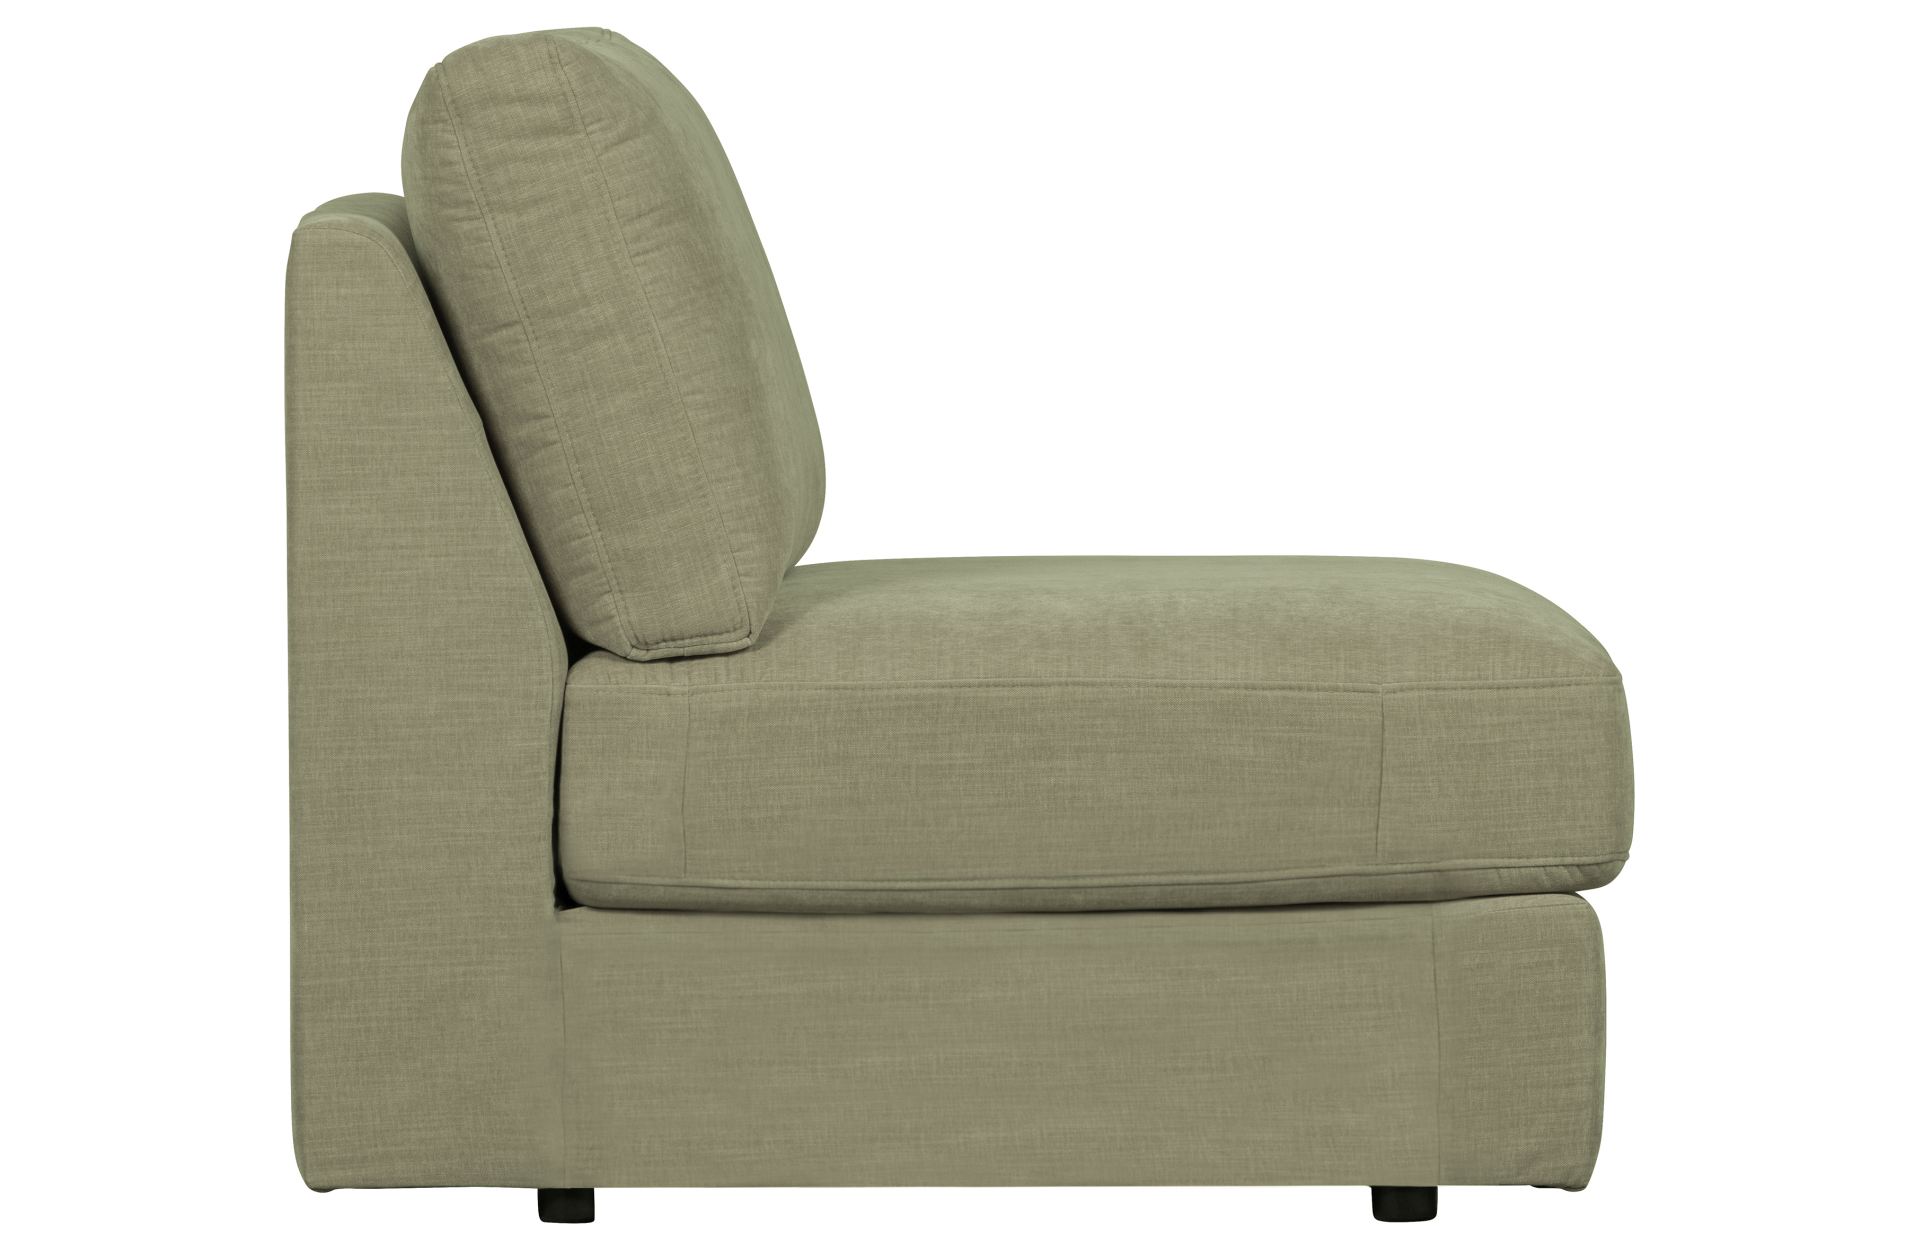 Das Modulsofa Family überzeugt mit seinem modernen Design. Das Seat Element wurde aus Gewebe-Stoff gefertigt, welcher einen einen grünen Farbton besitzen. Das Gestell ist aus Metall und hat eine schwarze Farbe. Das Element hat eine Sitzhöhe von 44 cm.